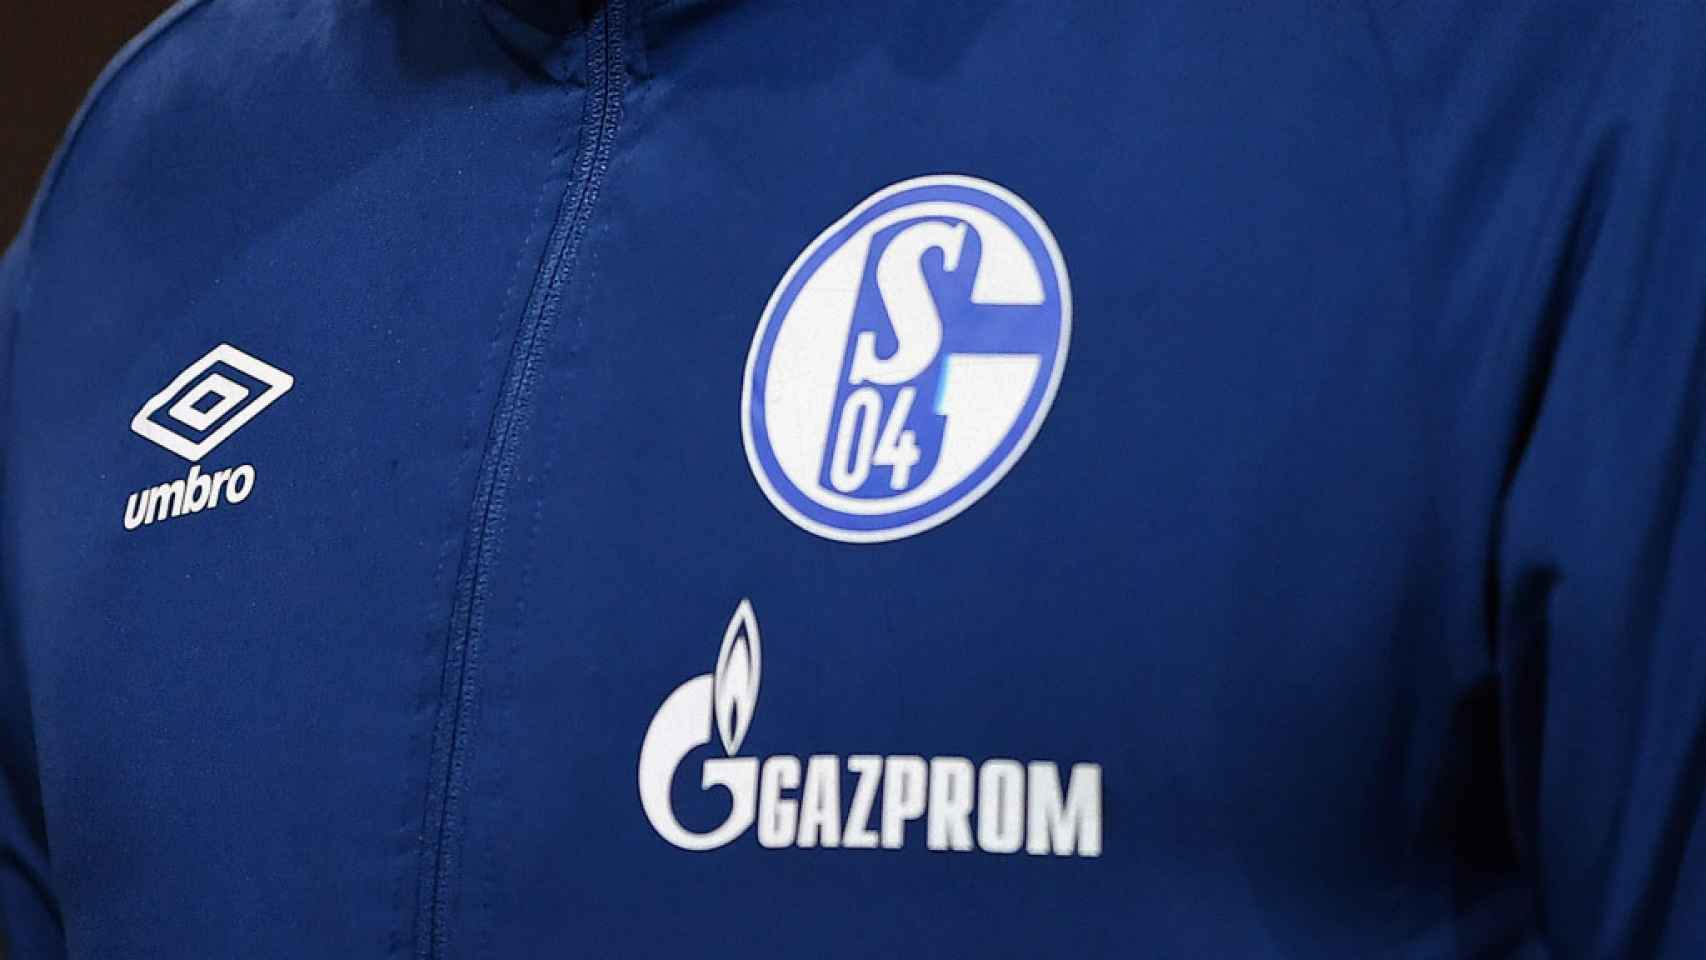 El logo de la empresa gasística rusa Gazprom, en la equipación del club de fútbol alemán Schalke 04.